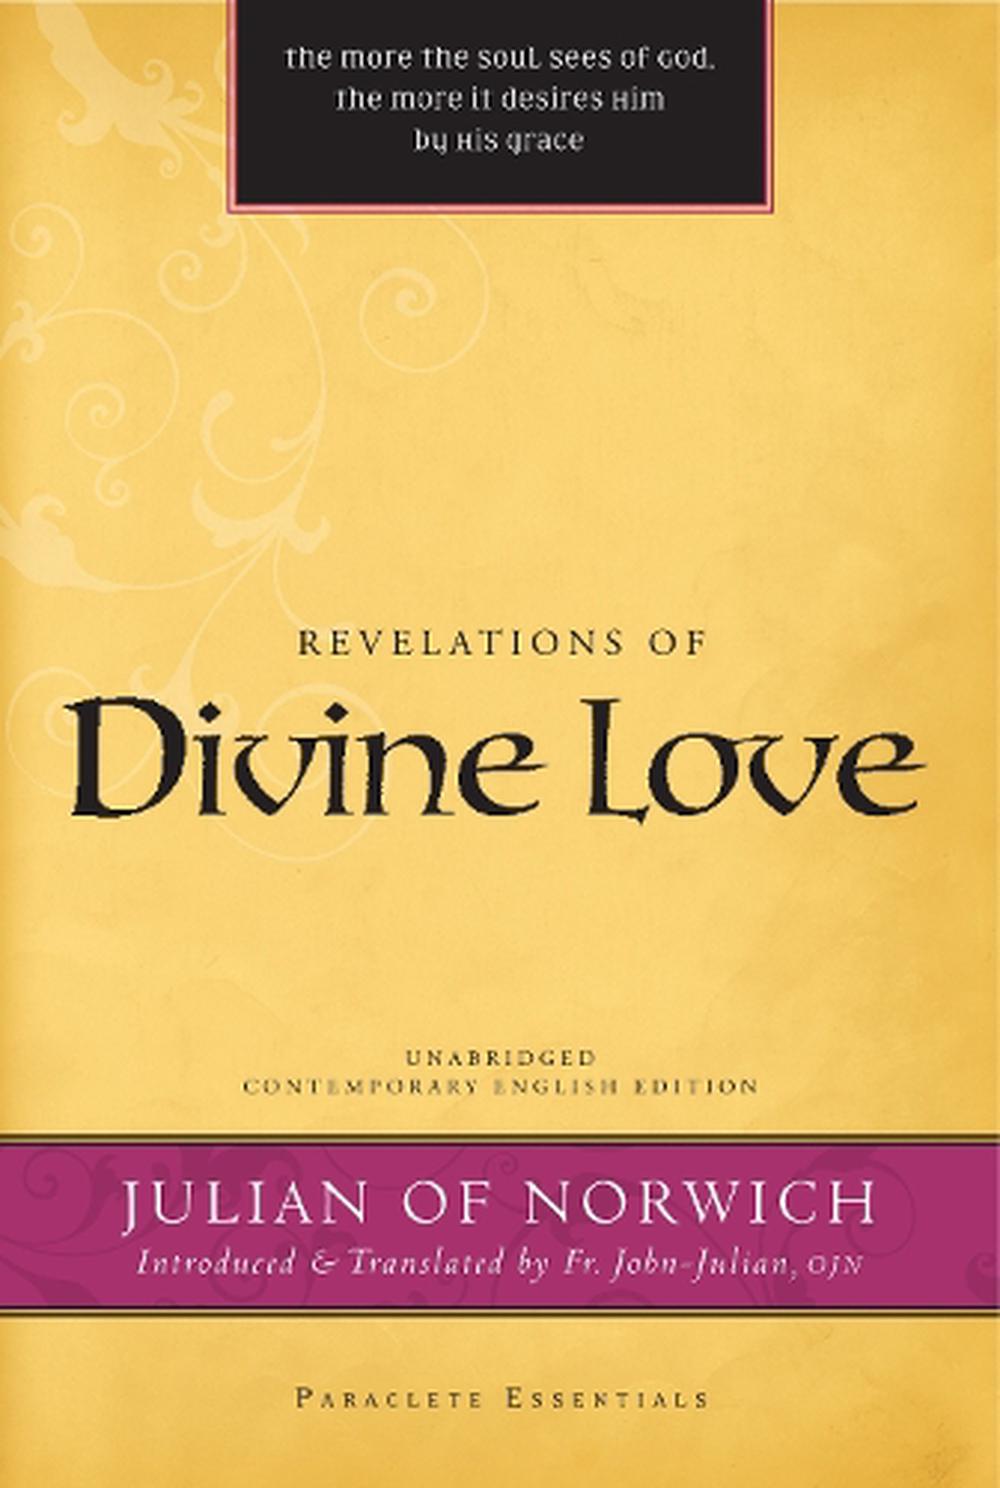 julian norwich revelations of divine love